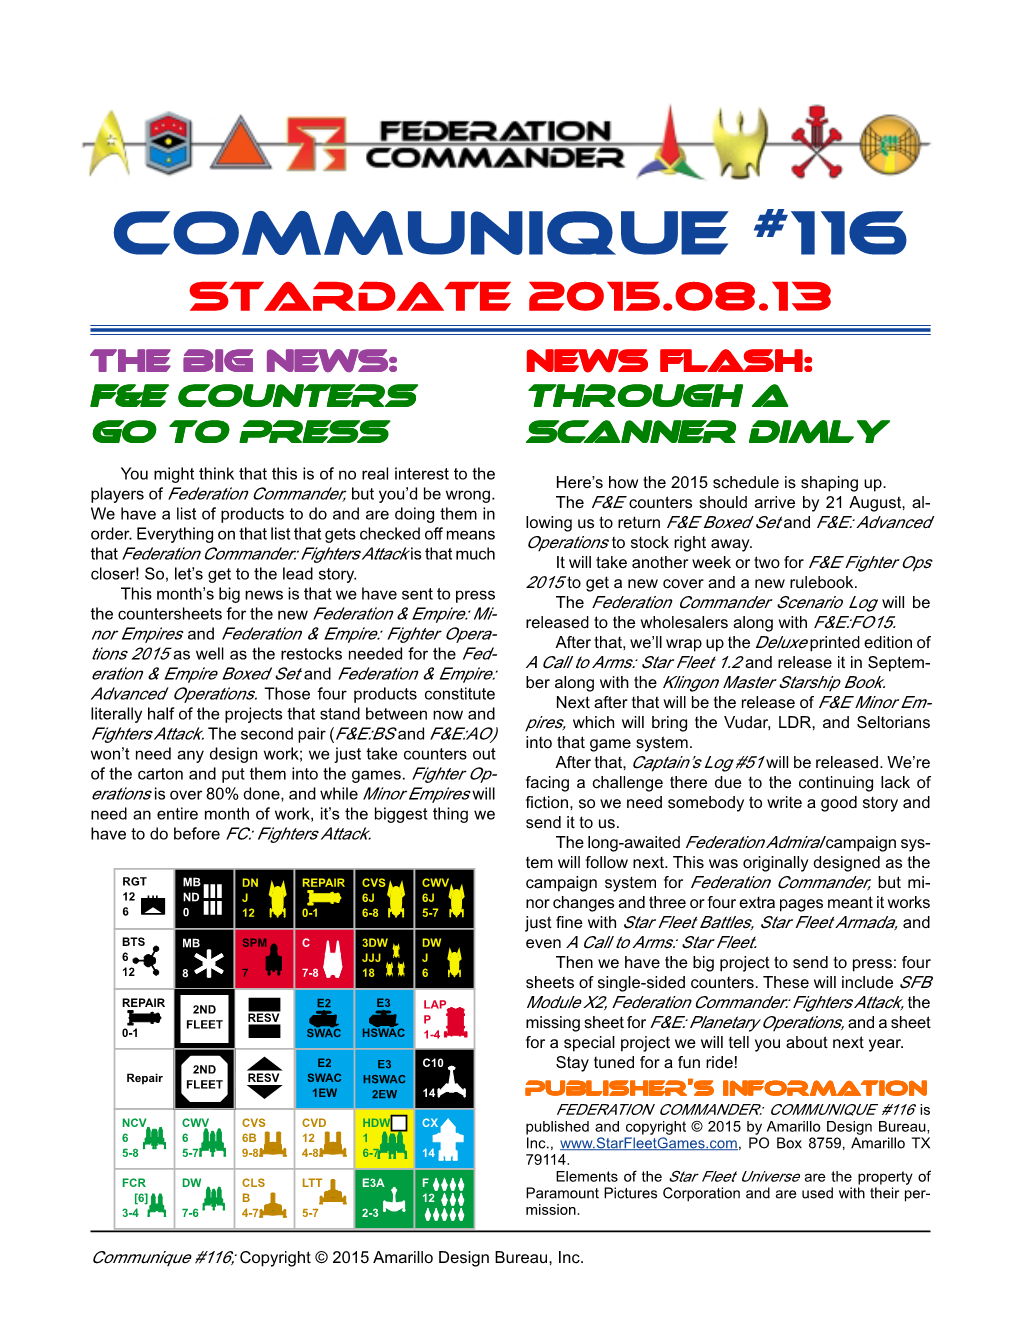 Communique #116 Stardate 2015.08.13